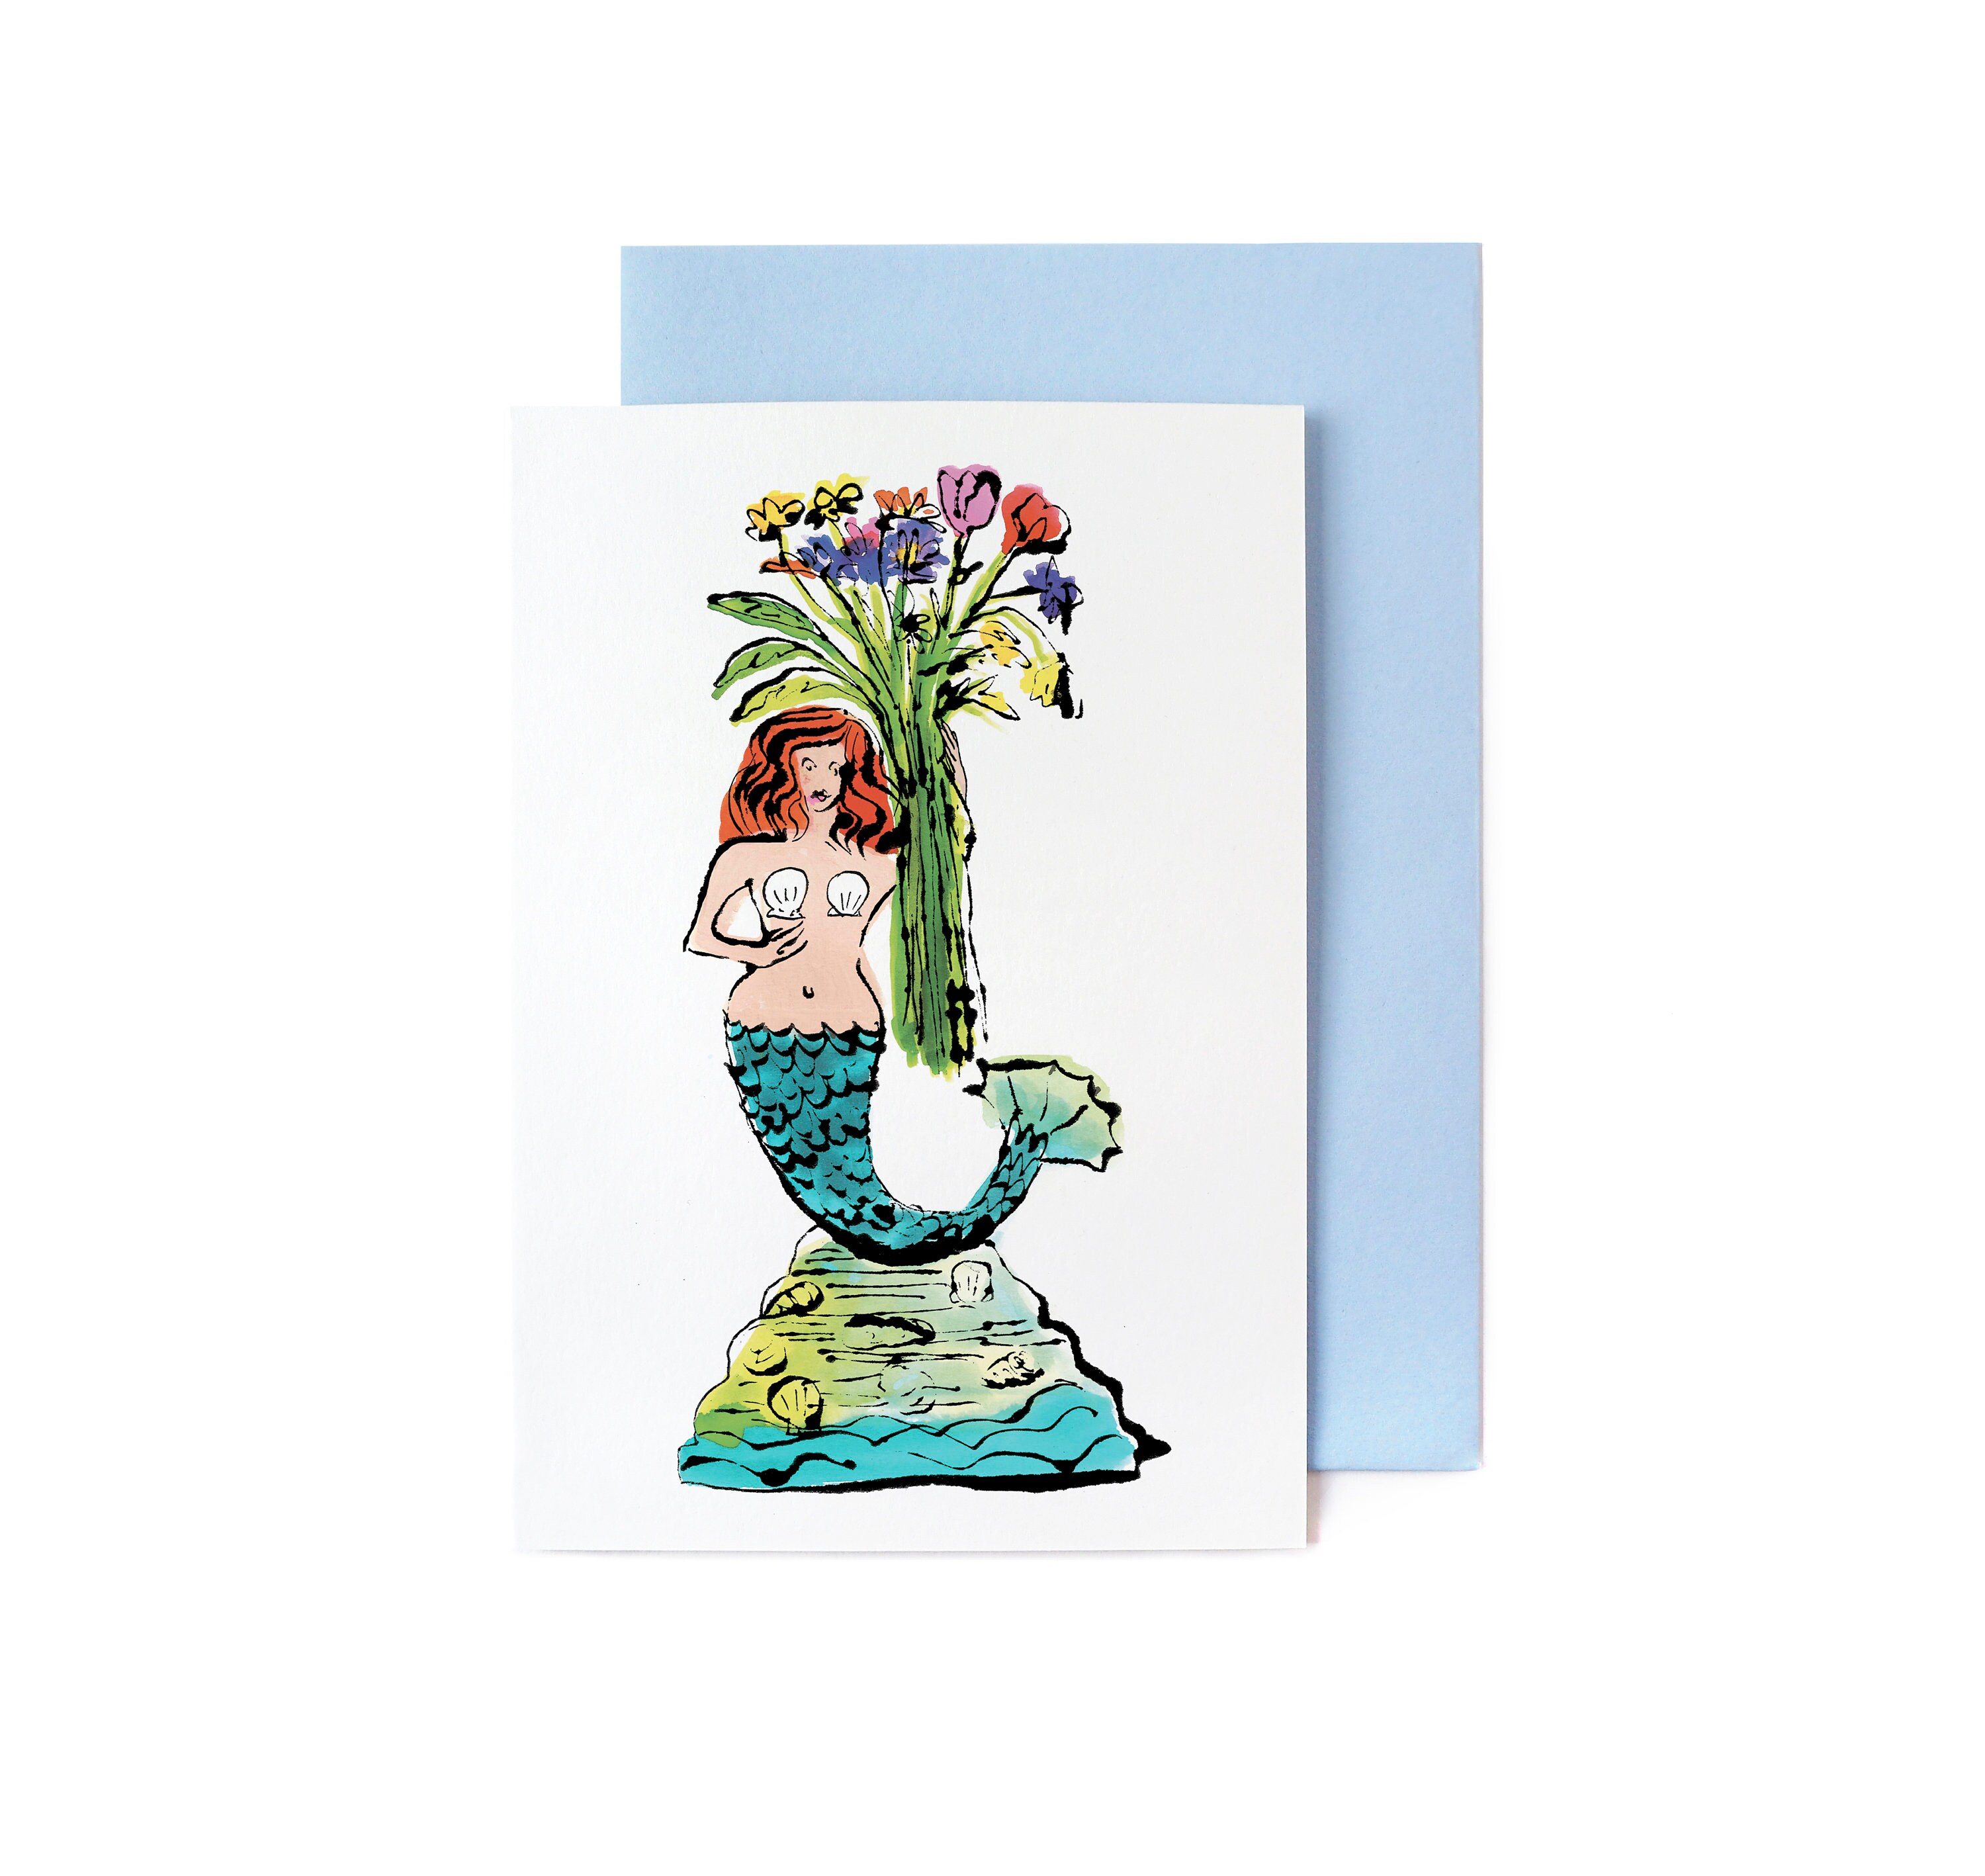 Mermaid theme Hand decorated Pen – Raminta ART